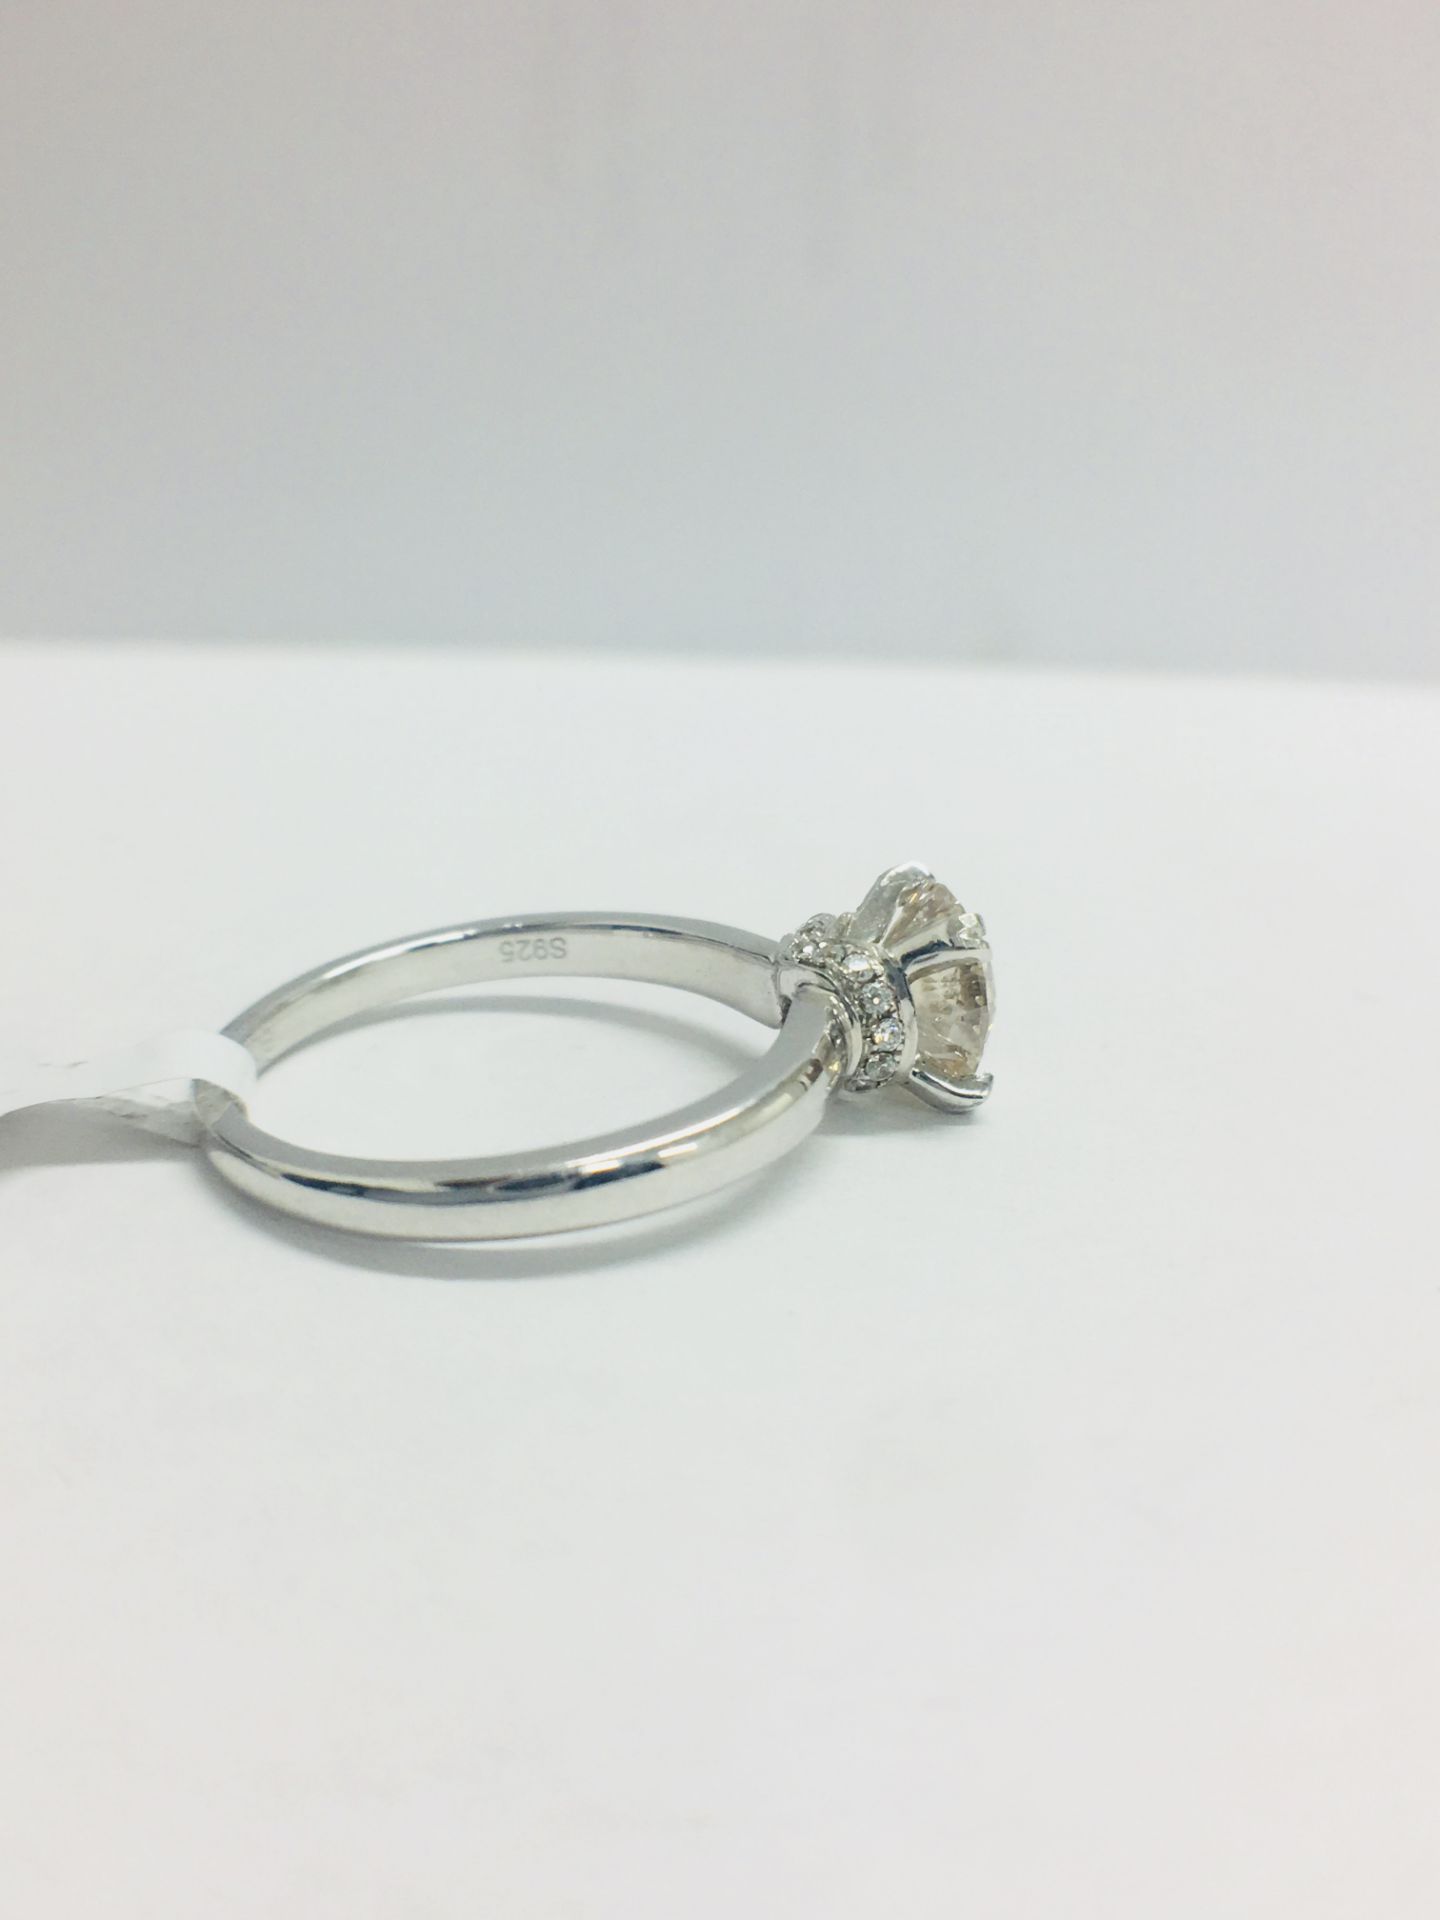 1ct Diamond Solitaire ring set in Platinum diamnd setting - Image 9 of 13